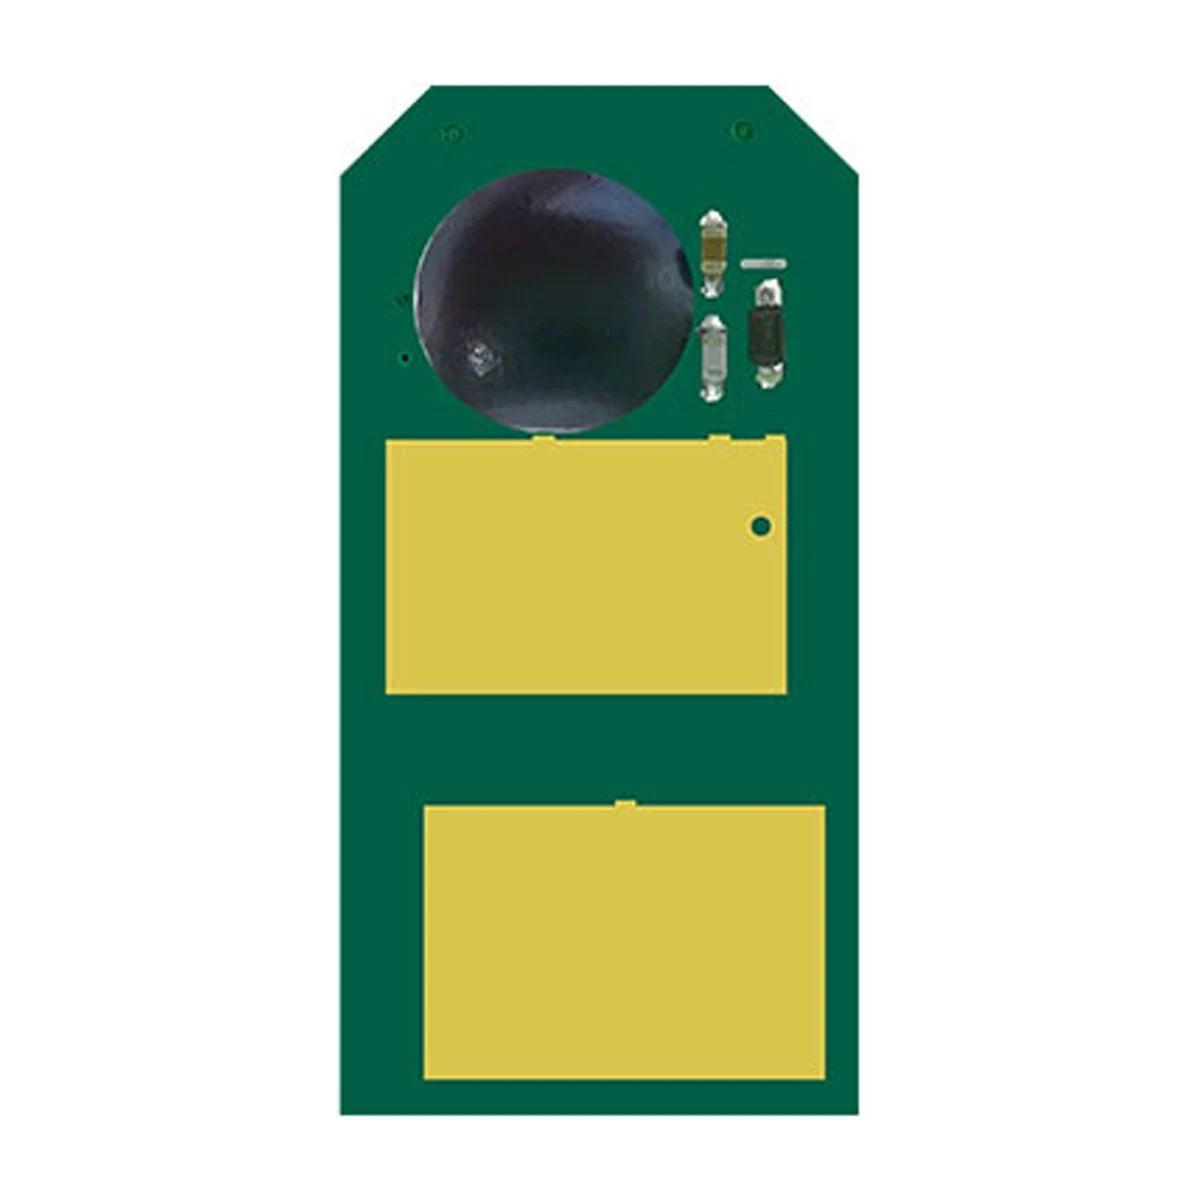 

5pcs Toner Cartridge Chip For Okidata B401d MB441 MB451 b401 441 MB 451 b 401d Printer 44992402 44992404 Toner Reset Chips